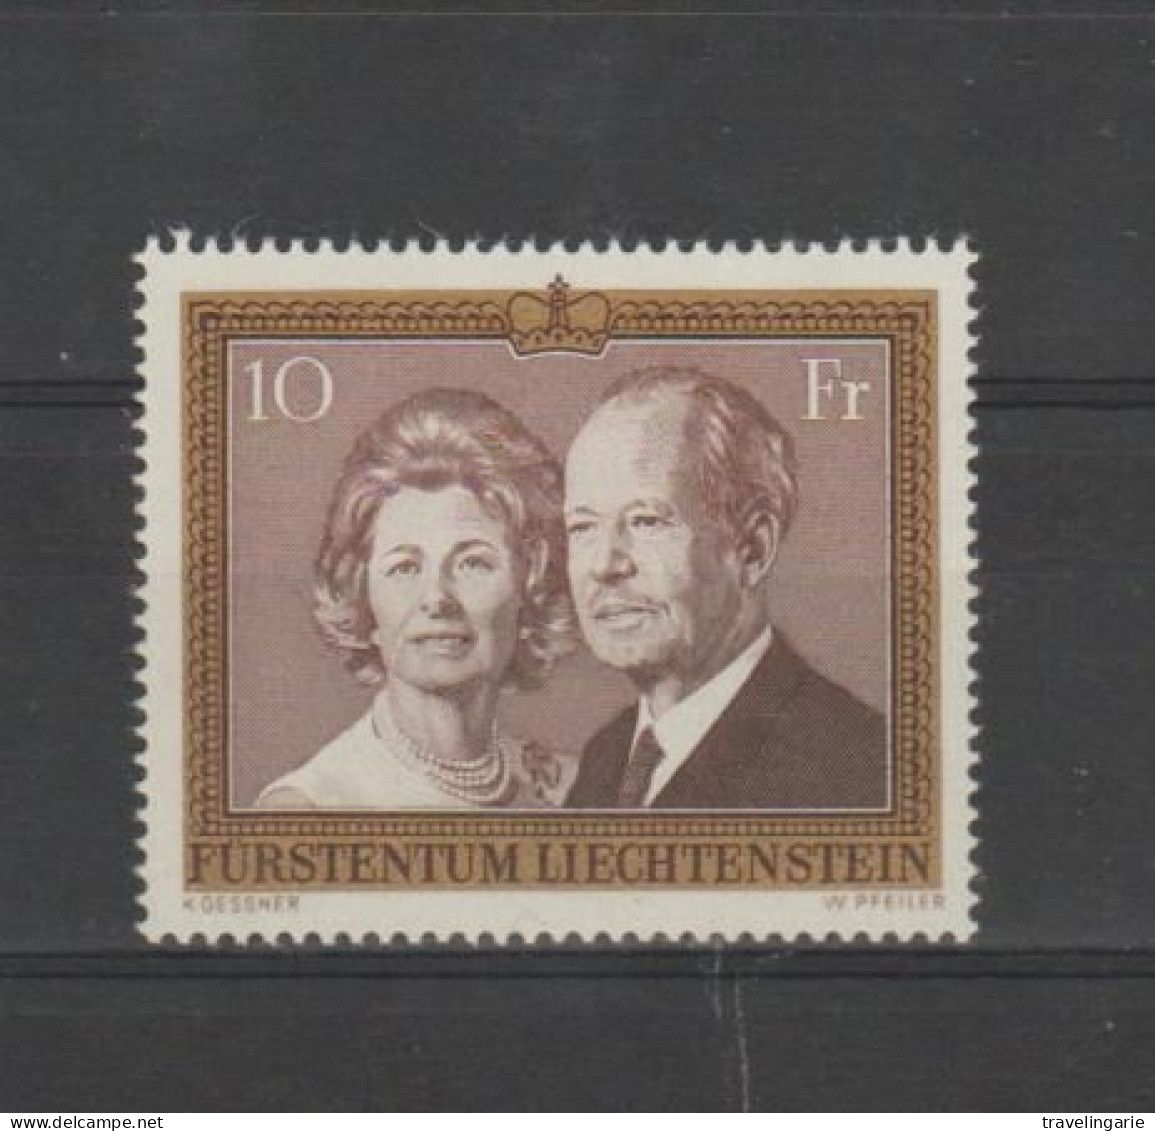 Liechtenstein 1974 Prince Franz Joseph II / Princess Georgine ** MNH - Familles Royales